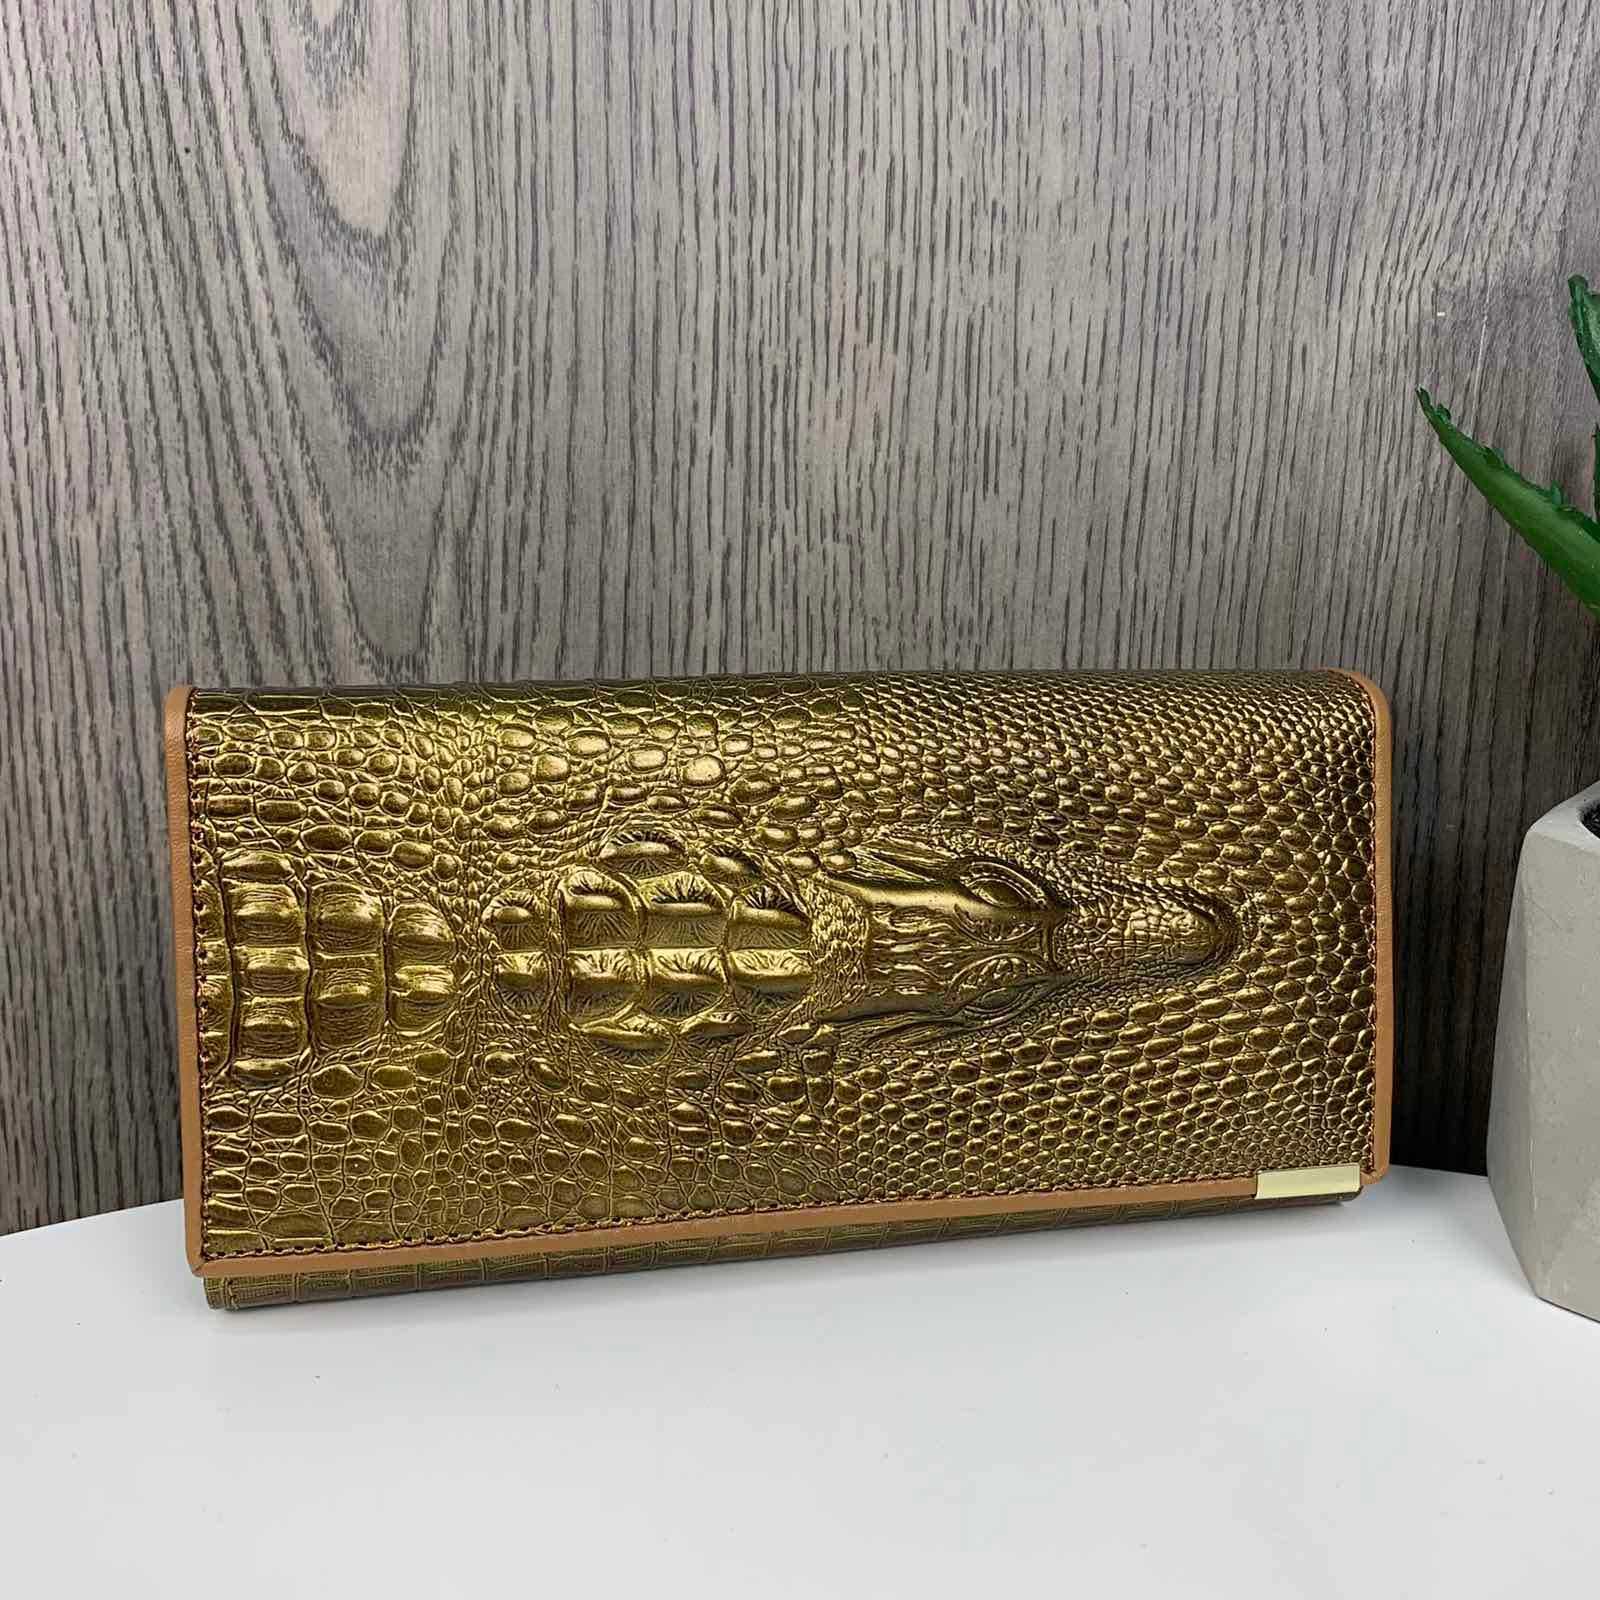 Подарок женский кошелек портмоне жіночий гаманець крокодил шкіра кожа